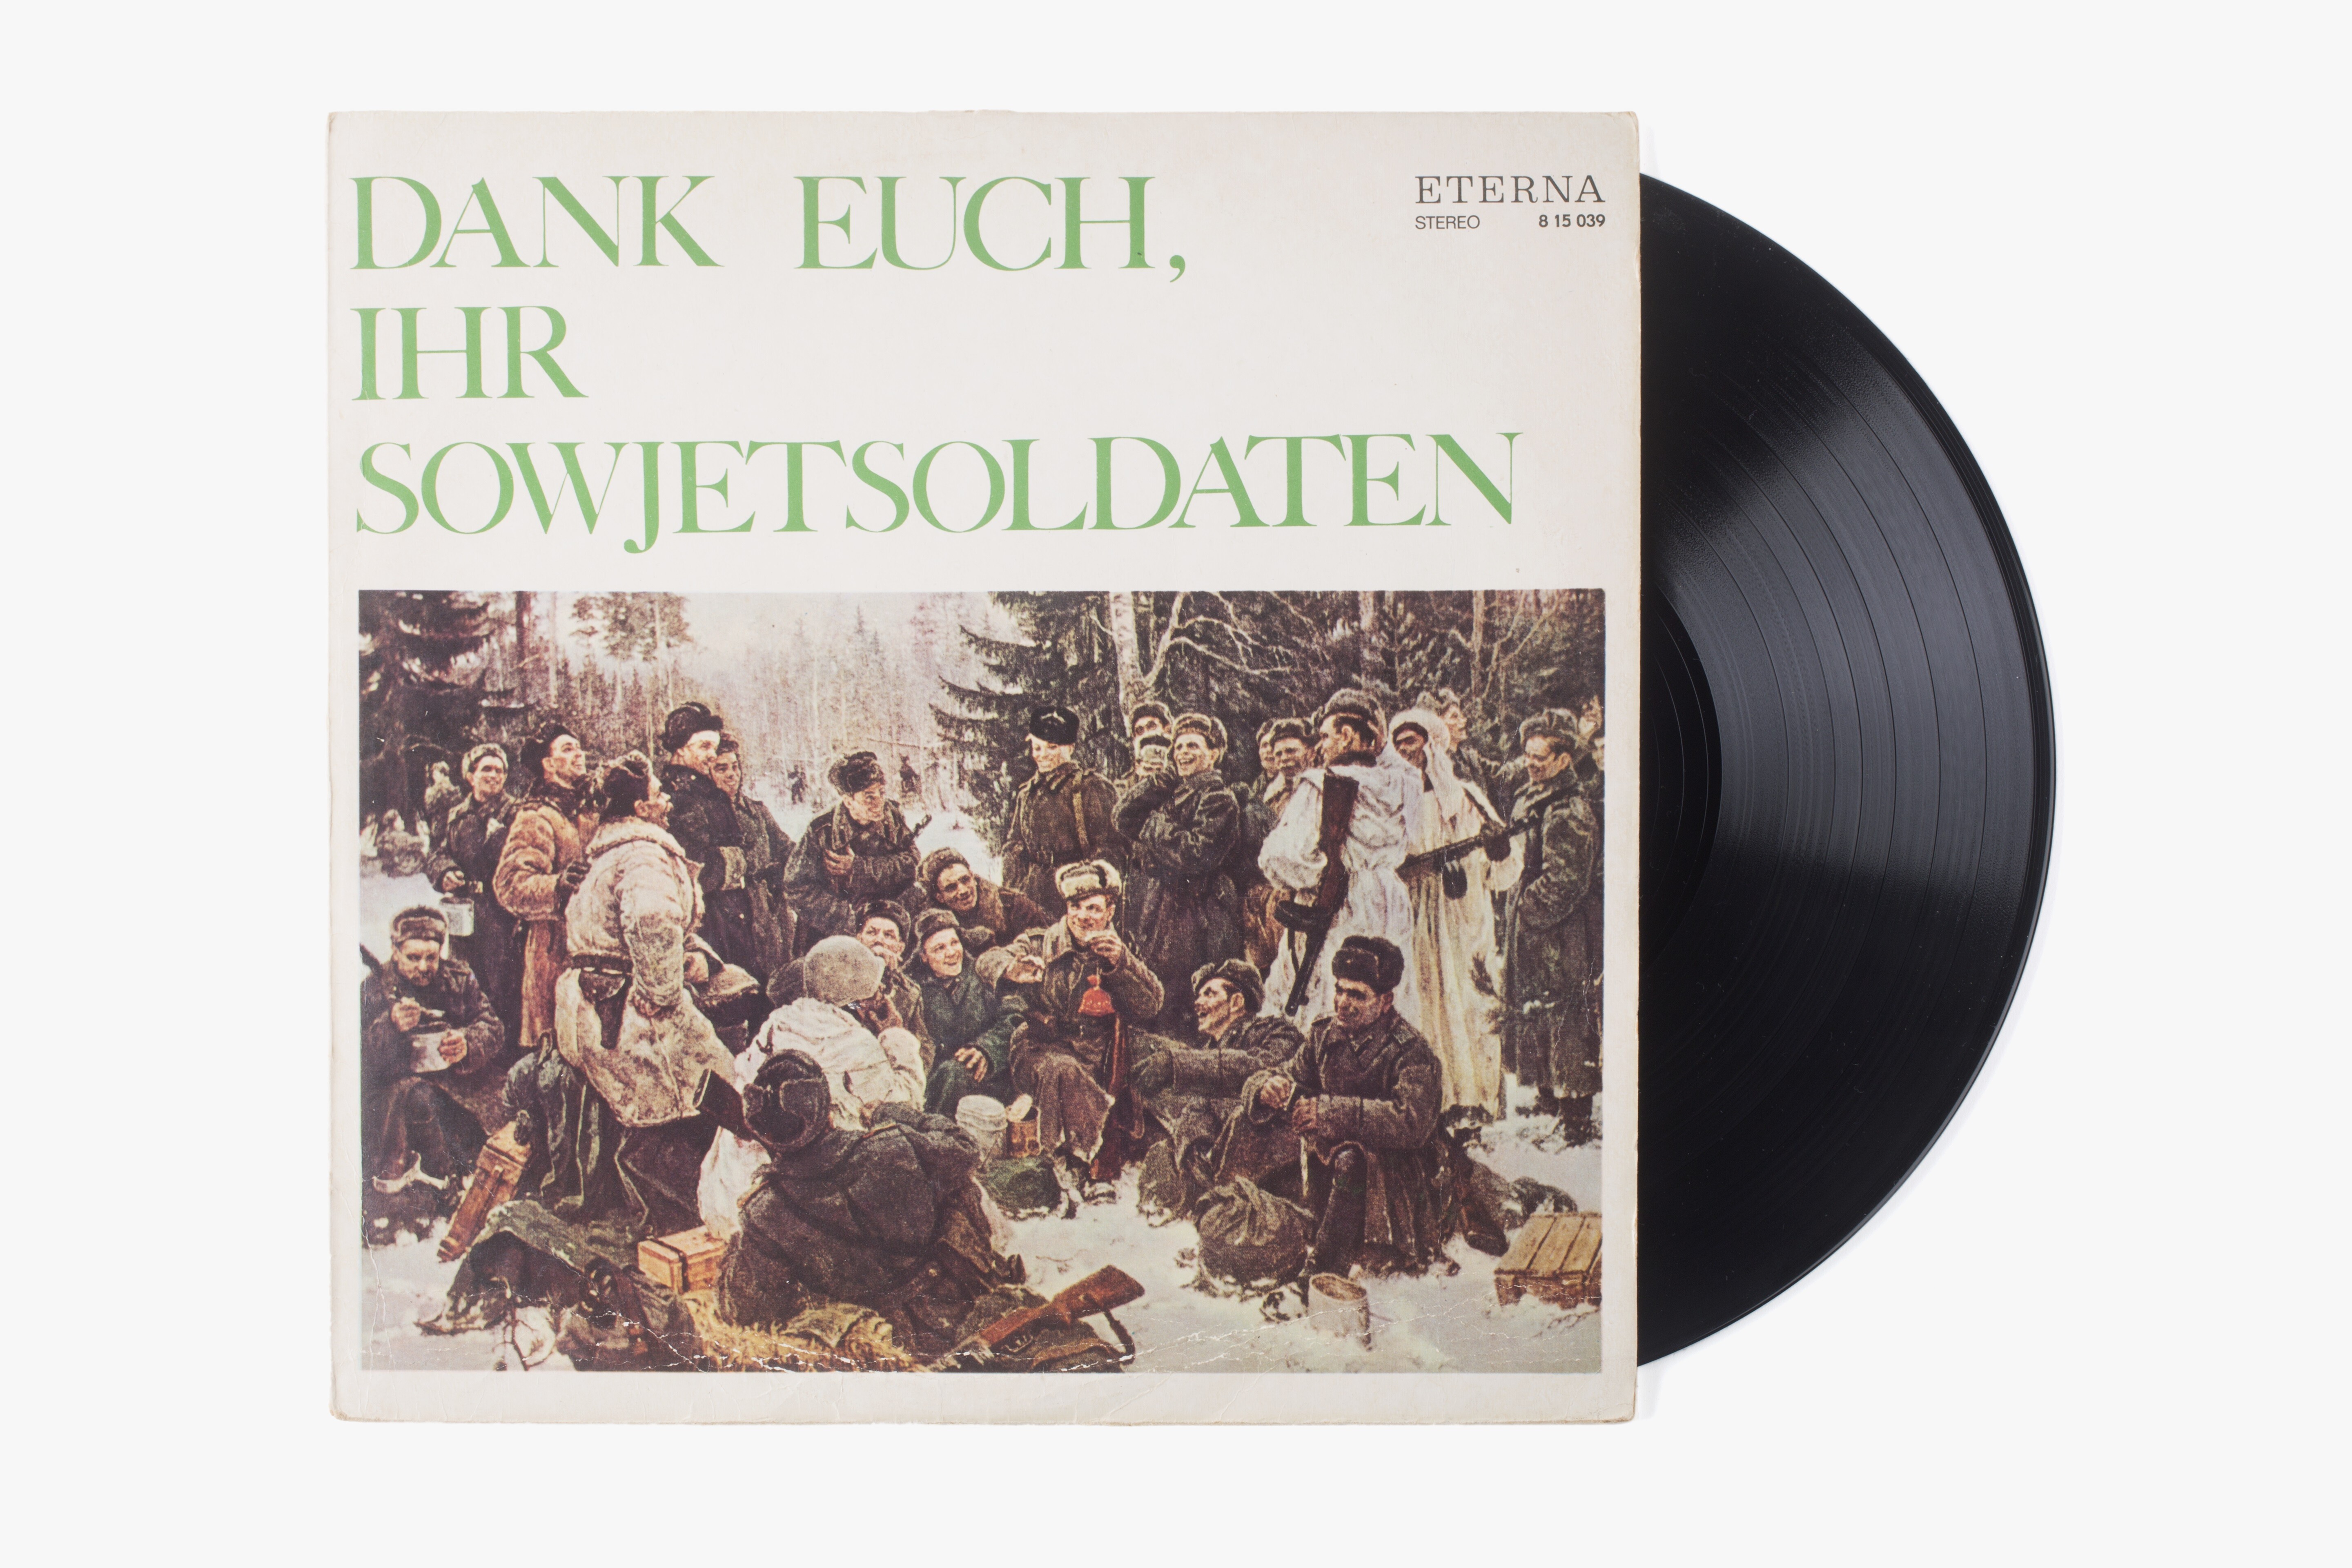 Schallplatte "Dank euch, Ihr Sowjetsoldaten" zum 25. Jahrestag des Kriegsendes, DDR, 1970 (Deutsch-Russisches Museum Berlin-Karlshorst RR-P)